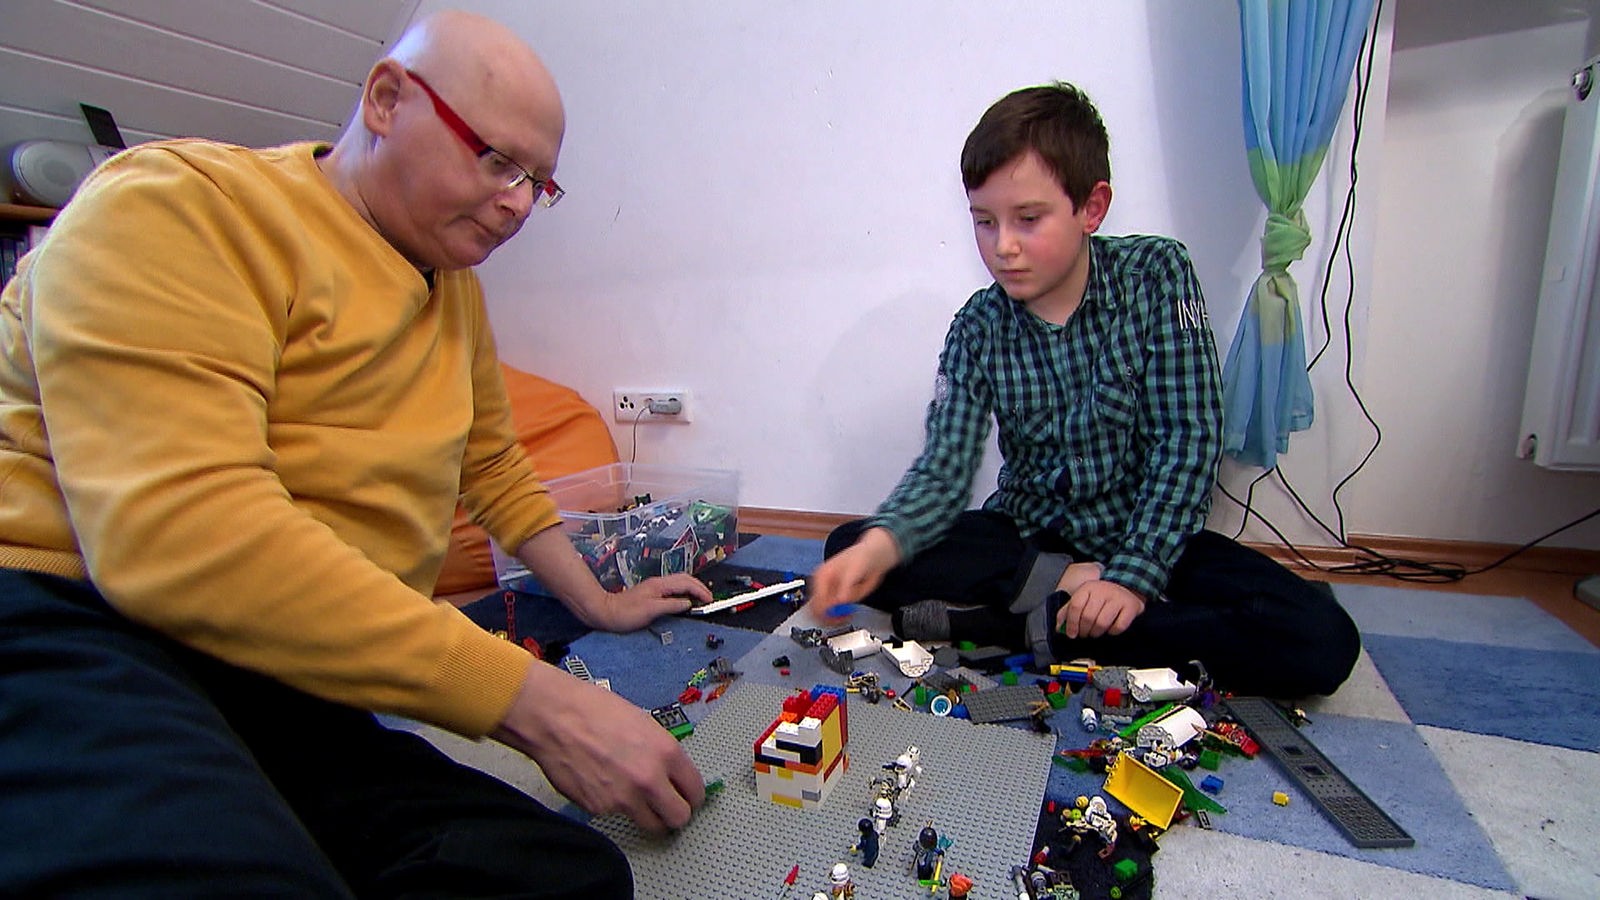 Vater und Sohn spielen Lego auf einem Teppichboden.